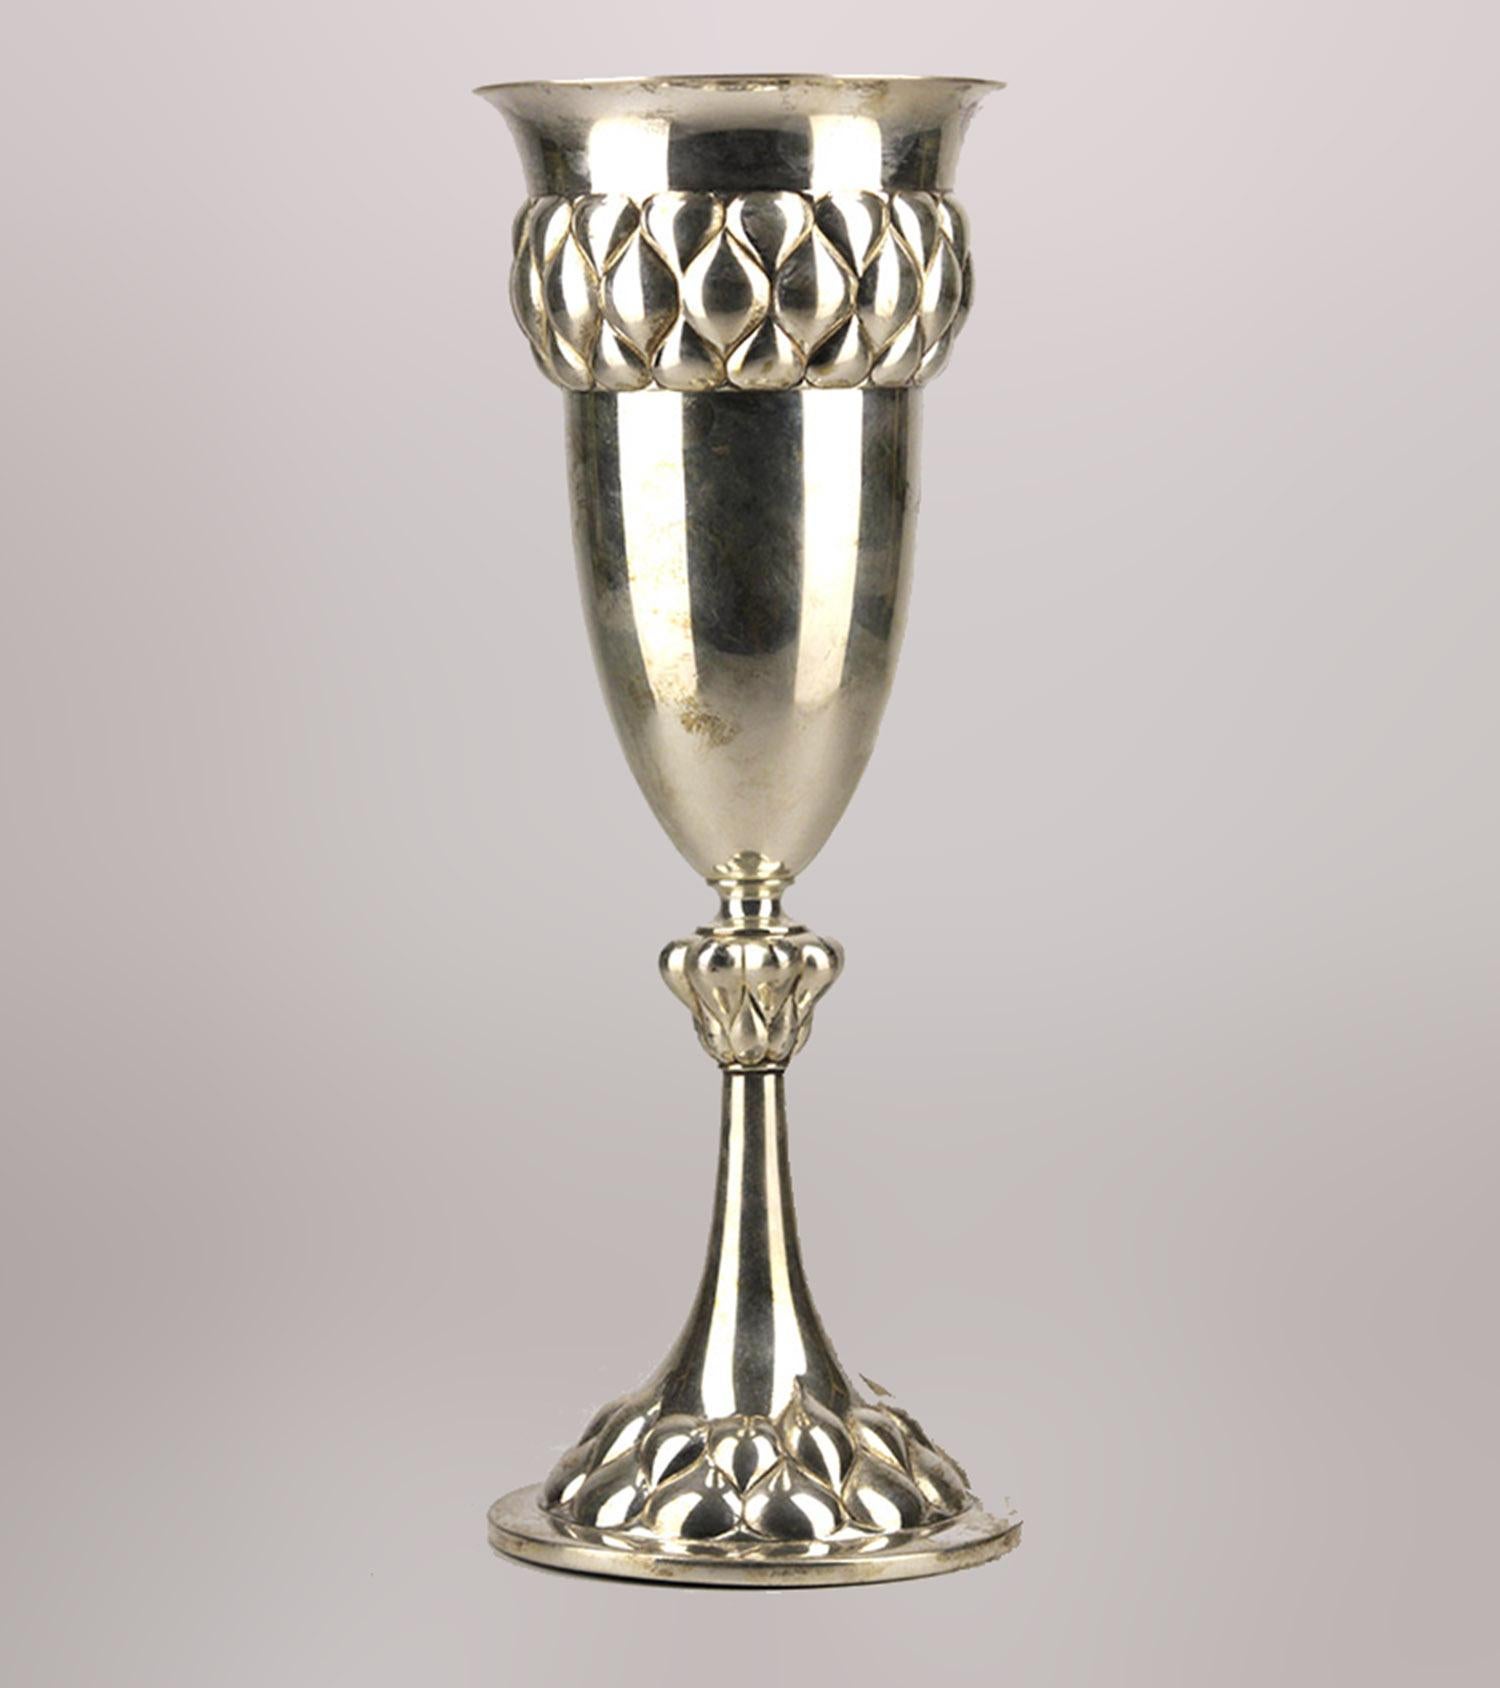 Jugendstil/Art Nouveau silver plated chalice-shaped presentation trophy vase by german company Württembergische Metallwarenfabrik (WMF)

By: Württembergische Metallwarenfabrik (WMF)
Material: silver, silver plate, metal
Technique: silvered, plated,